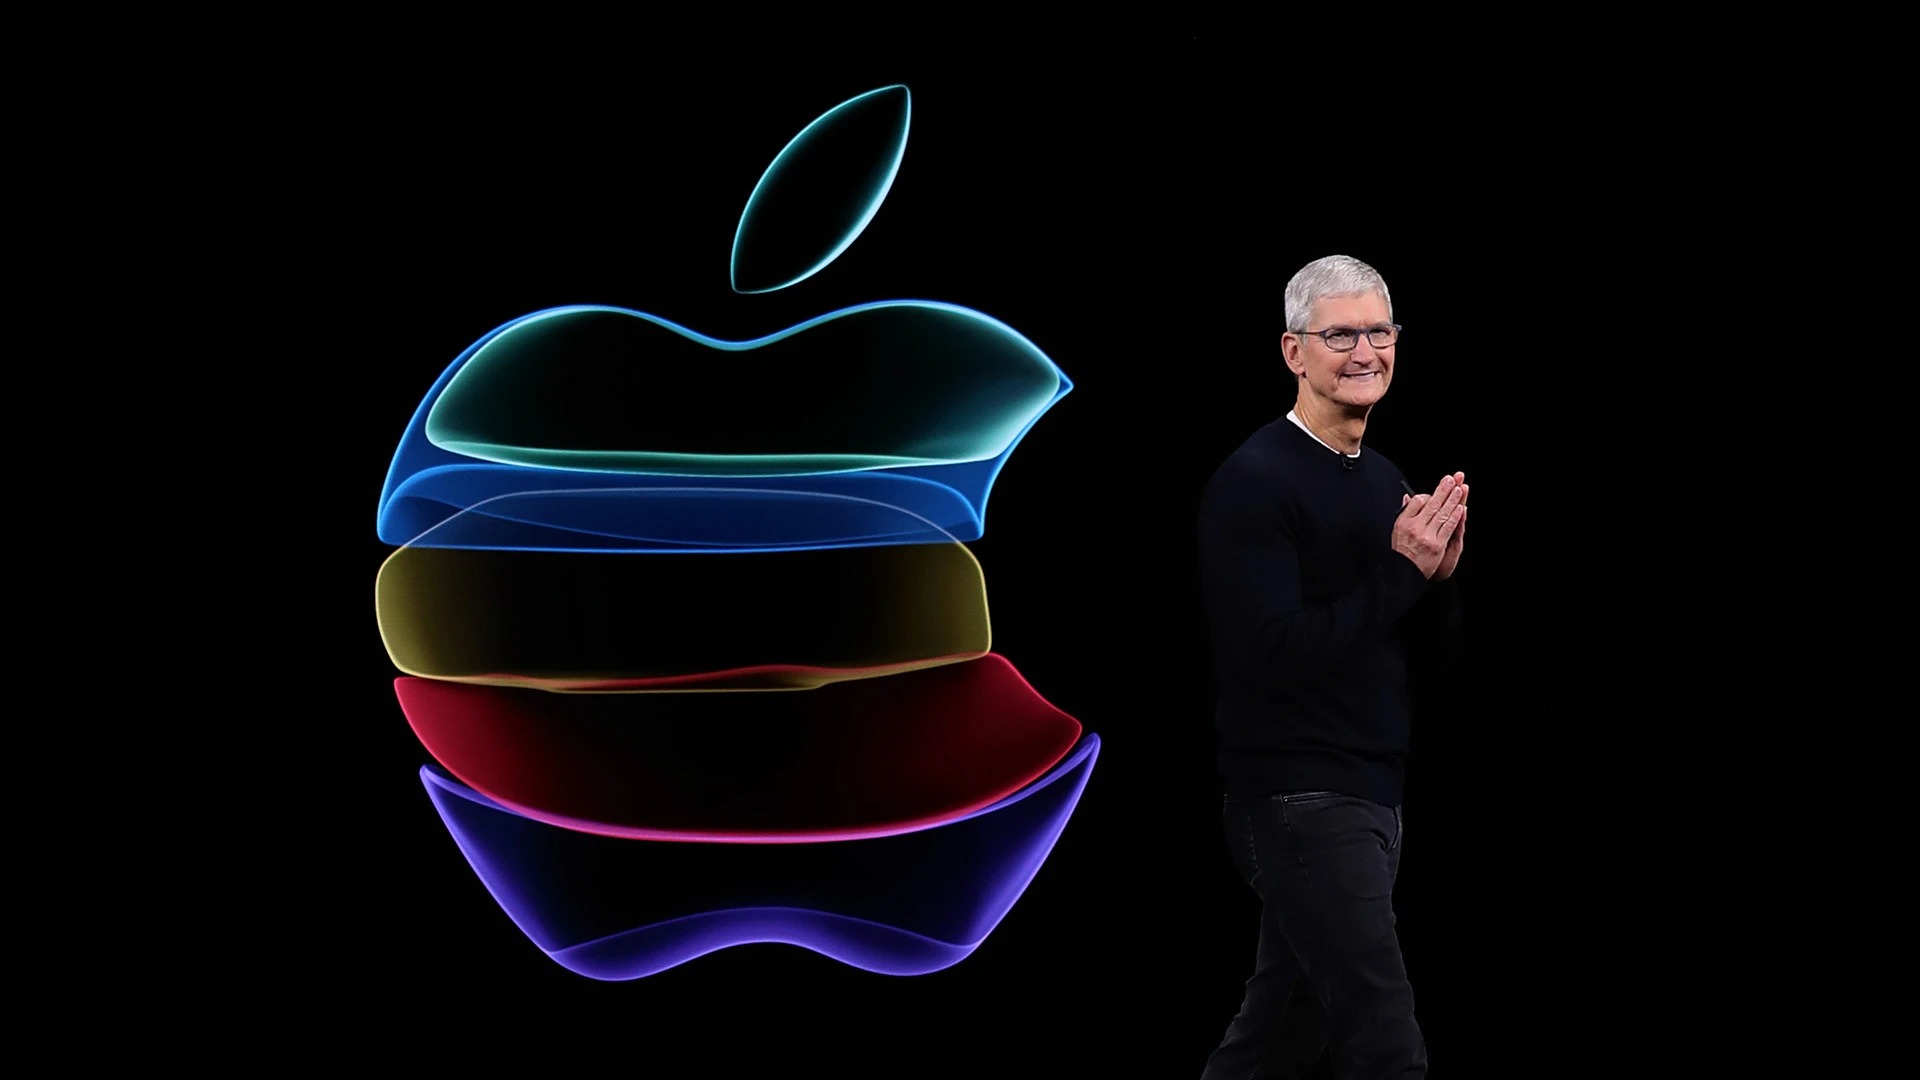 Apple wprowadzi we wrześniu iPhone’a 14 Mini i iPada 10,2 cala?